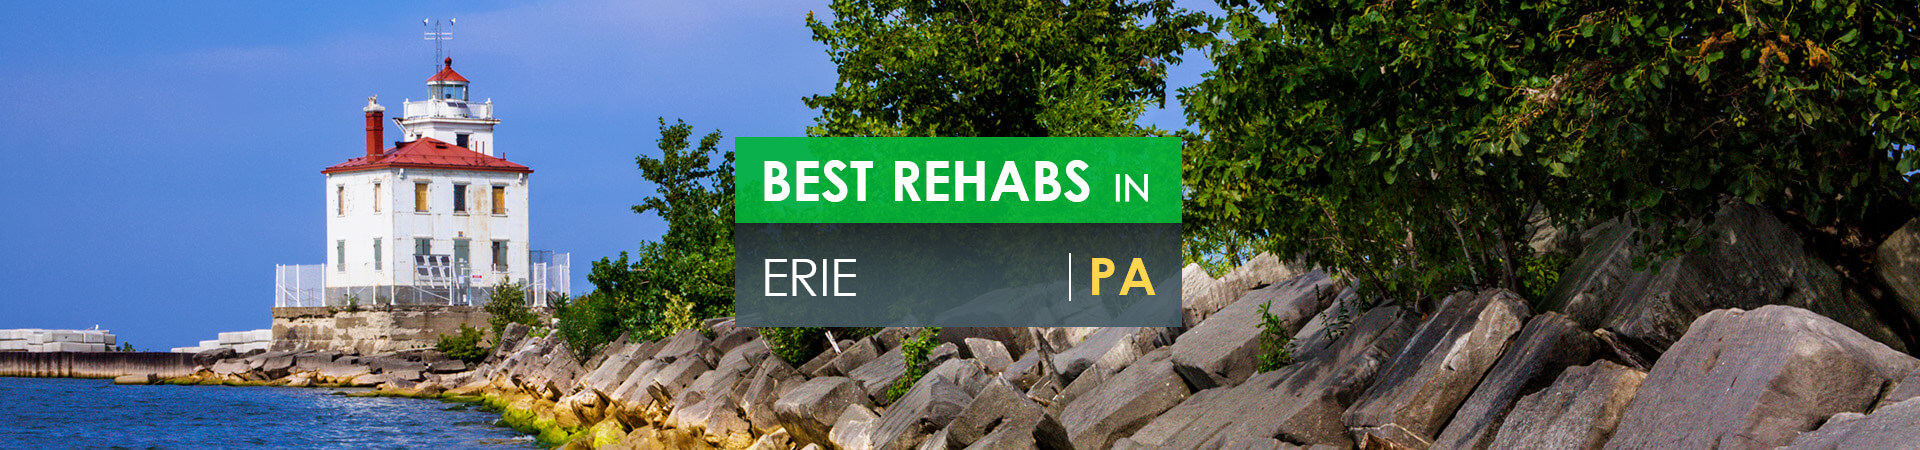 Best rehabs in Erie, PA